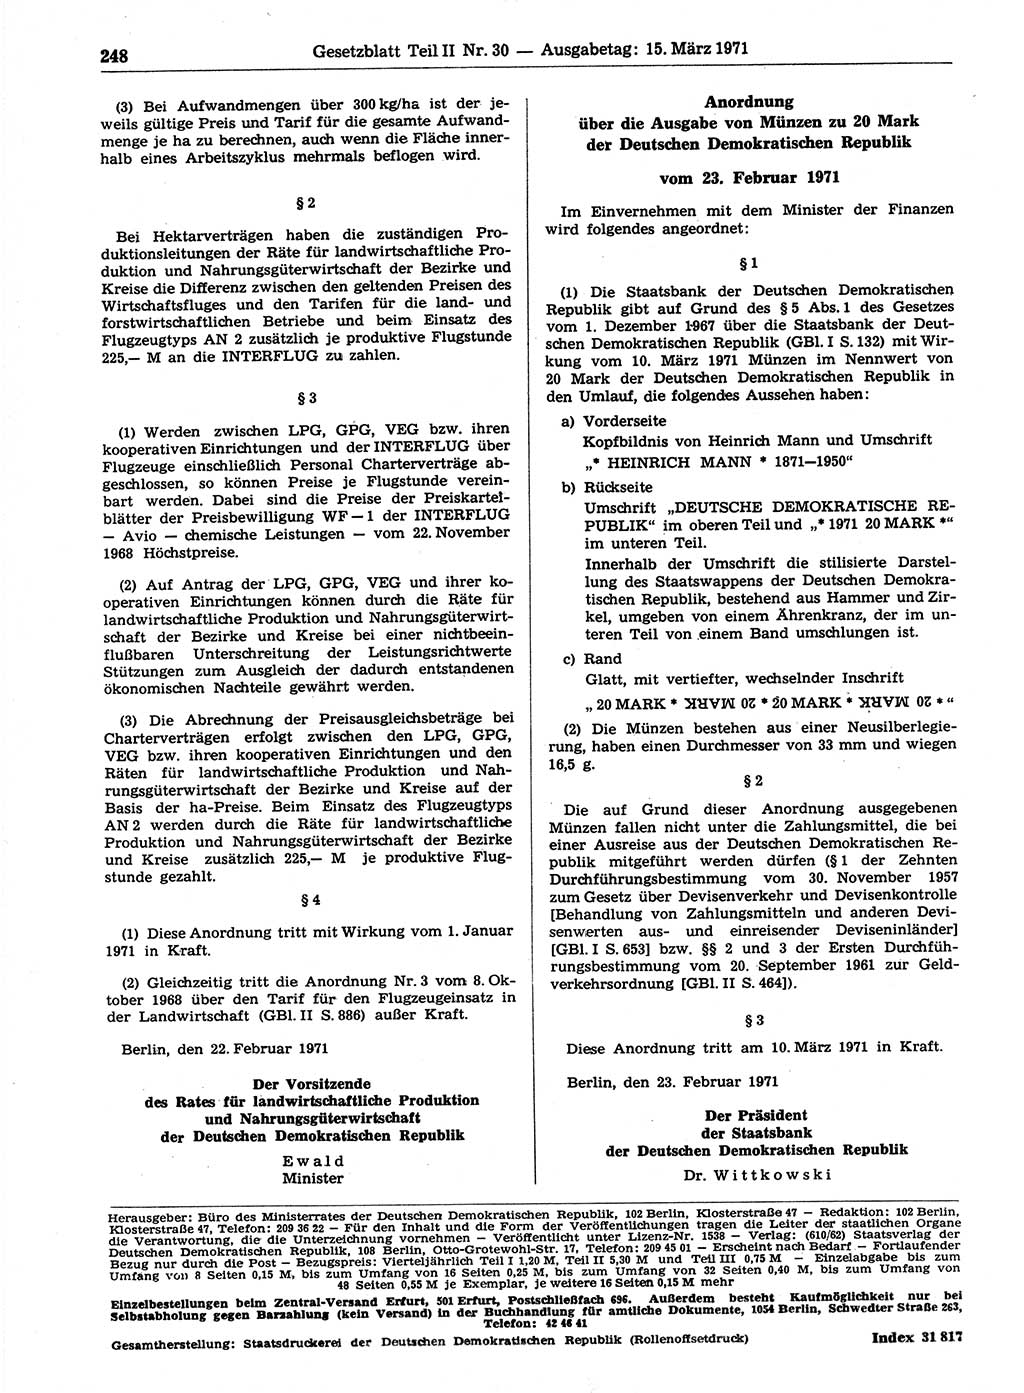 Gesetzblatt (GBl.) der Deutschen Demokratischen Republik (DDR) Teil ⅠⅠ 1971, Seite 248 (GBl. DDR ⅠⅠ 1971, S. 248)